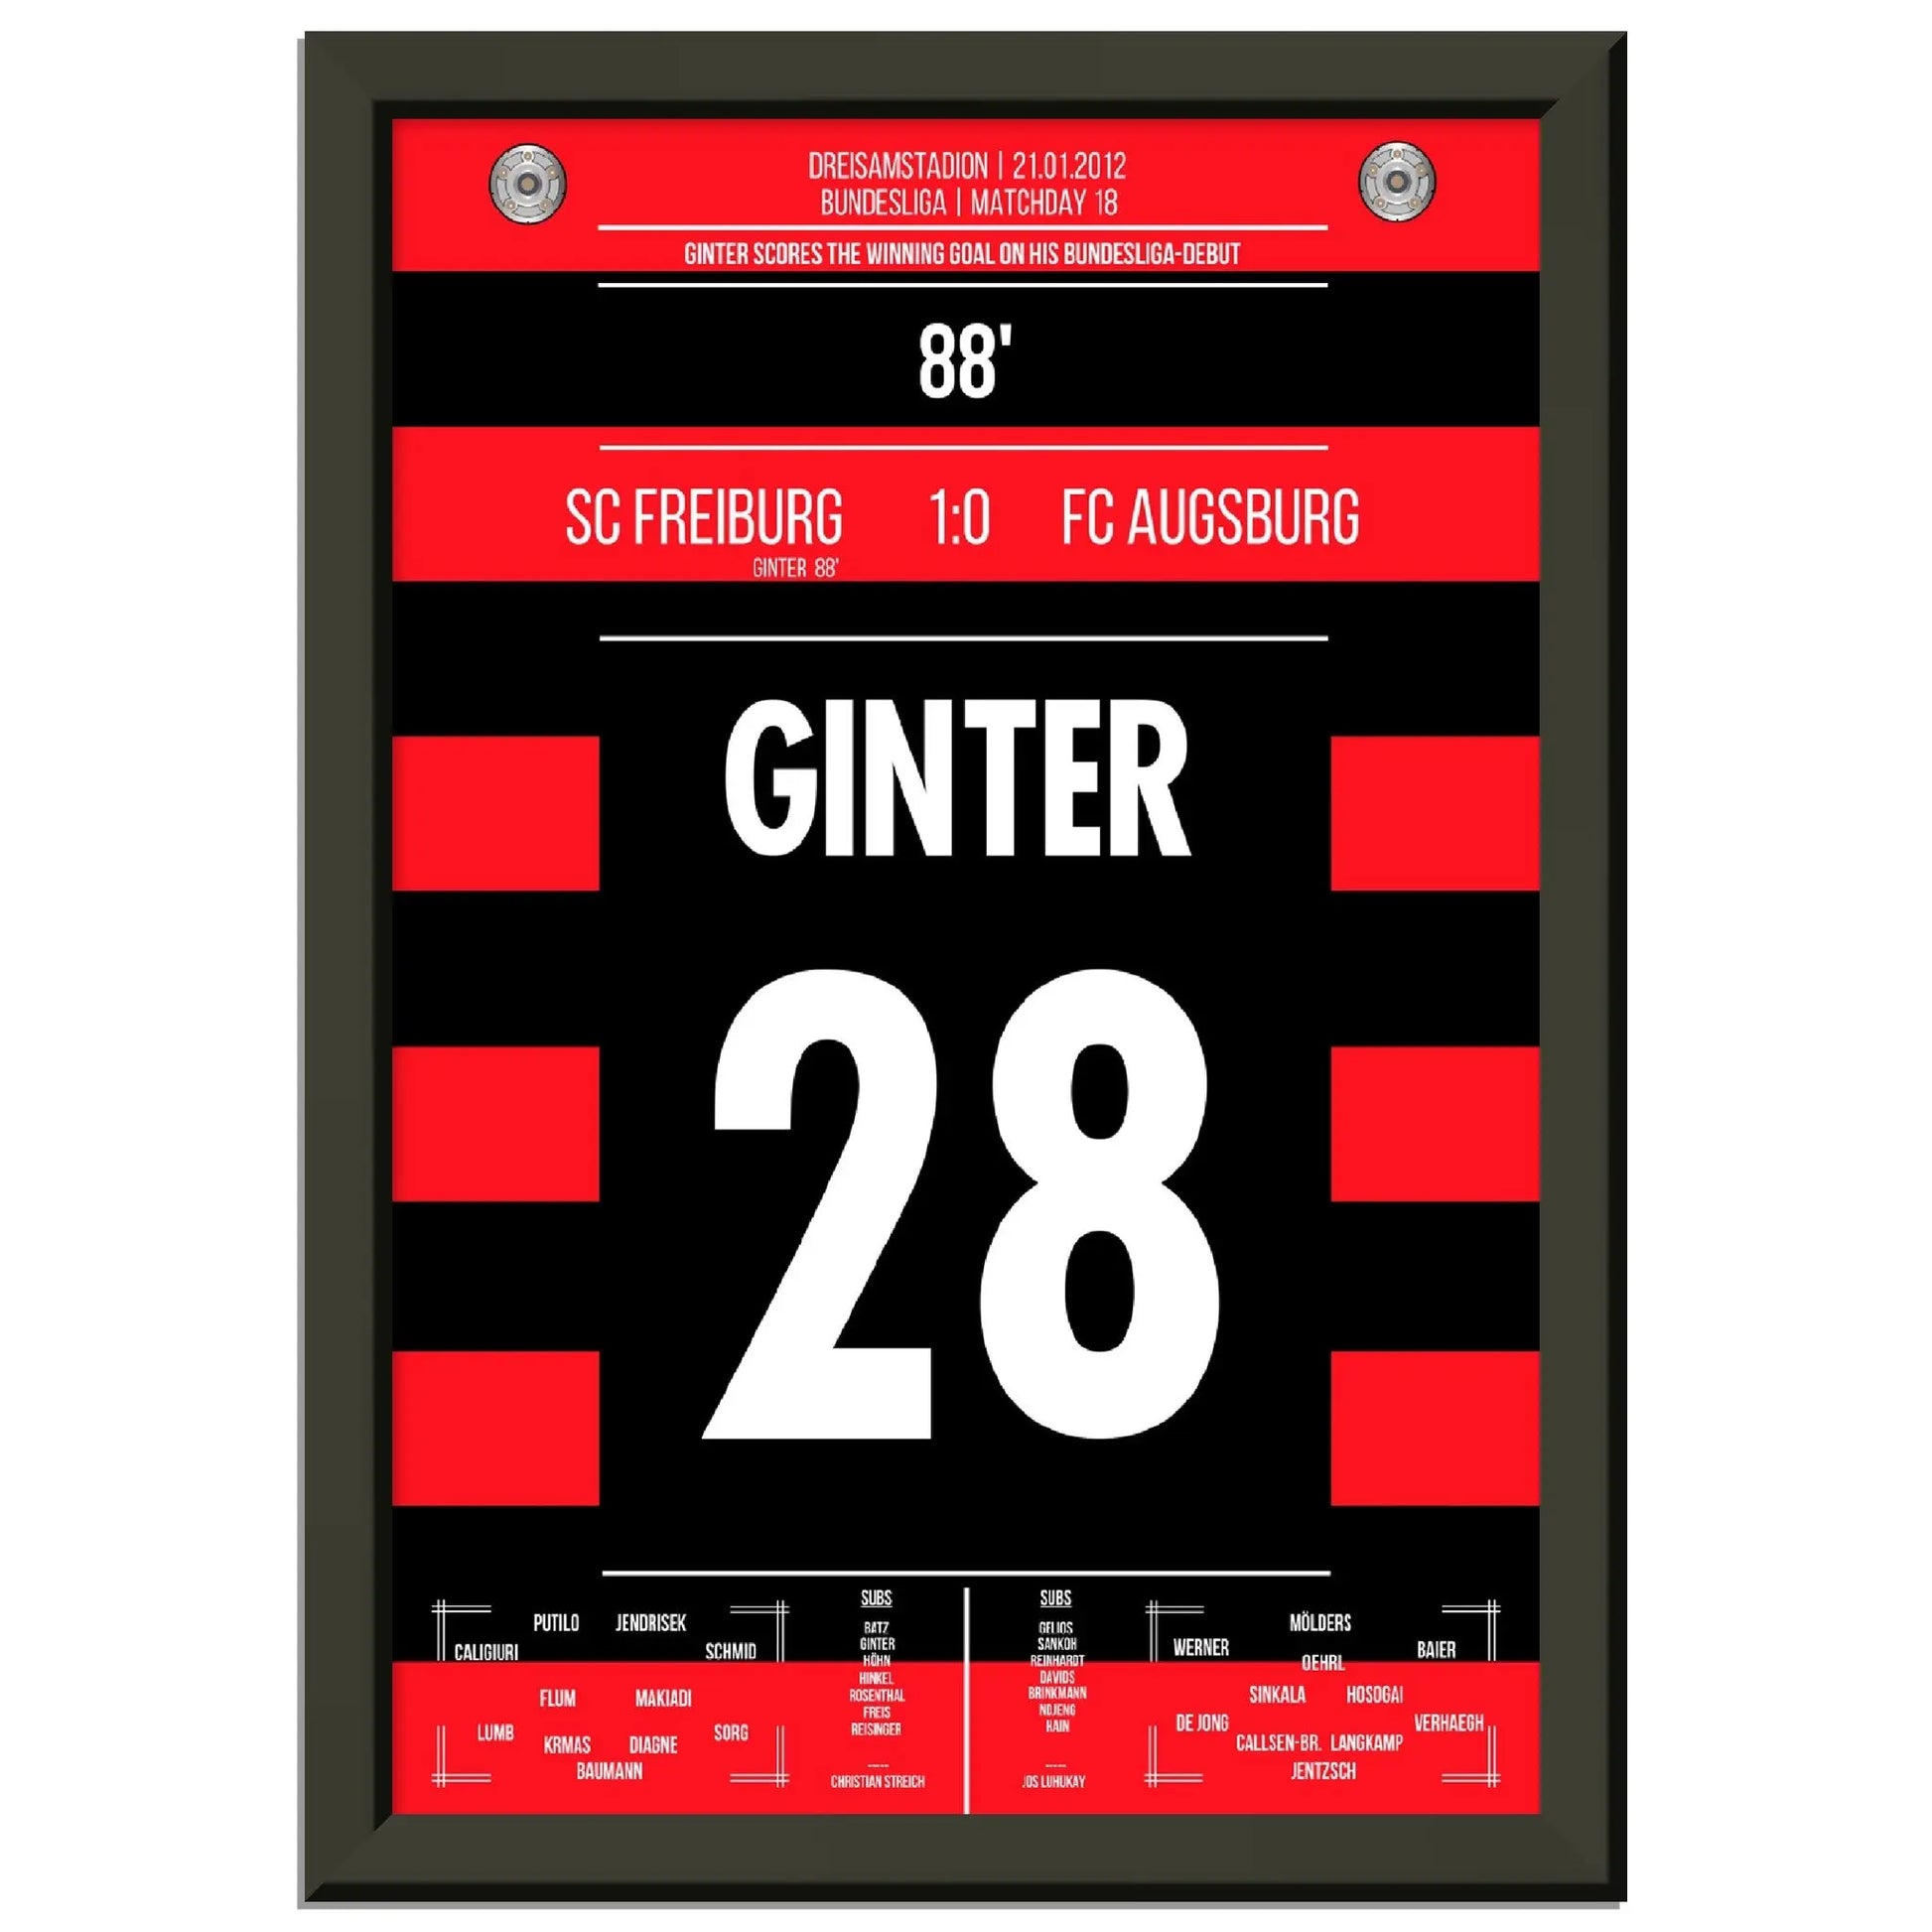 Ginter's Siegtreffer beim Bundesliga-Debüt 2012 